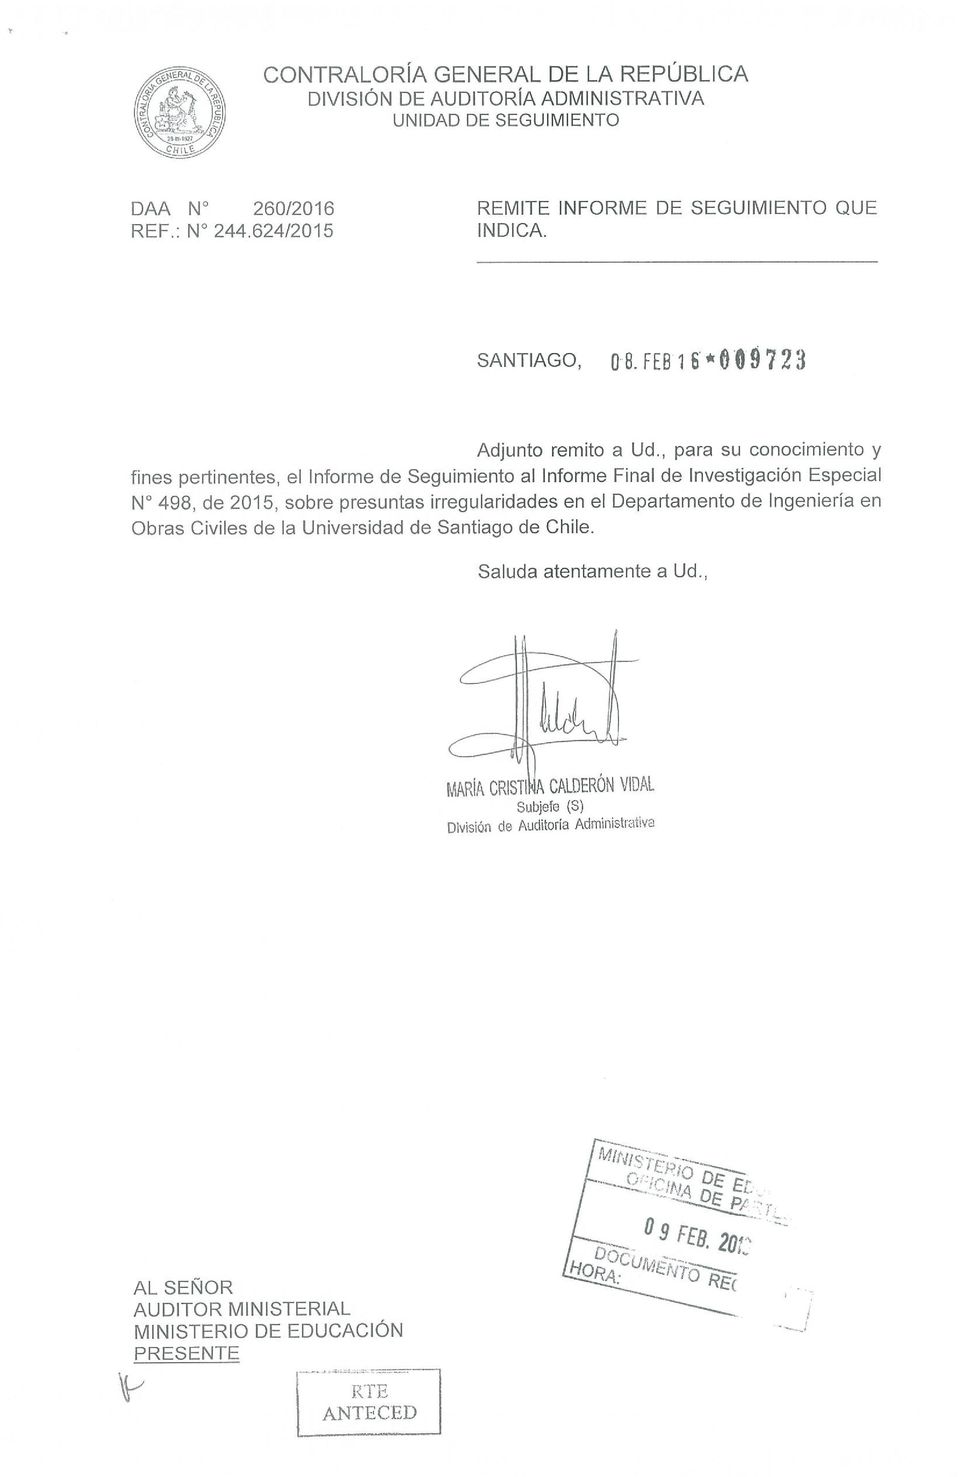 2015, sobre presuntas irregularidades en el Departamento de Ingeniería en Obras Civiles de la Universidad de Santiago de